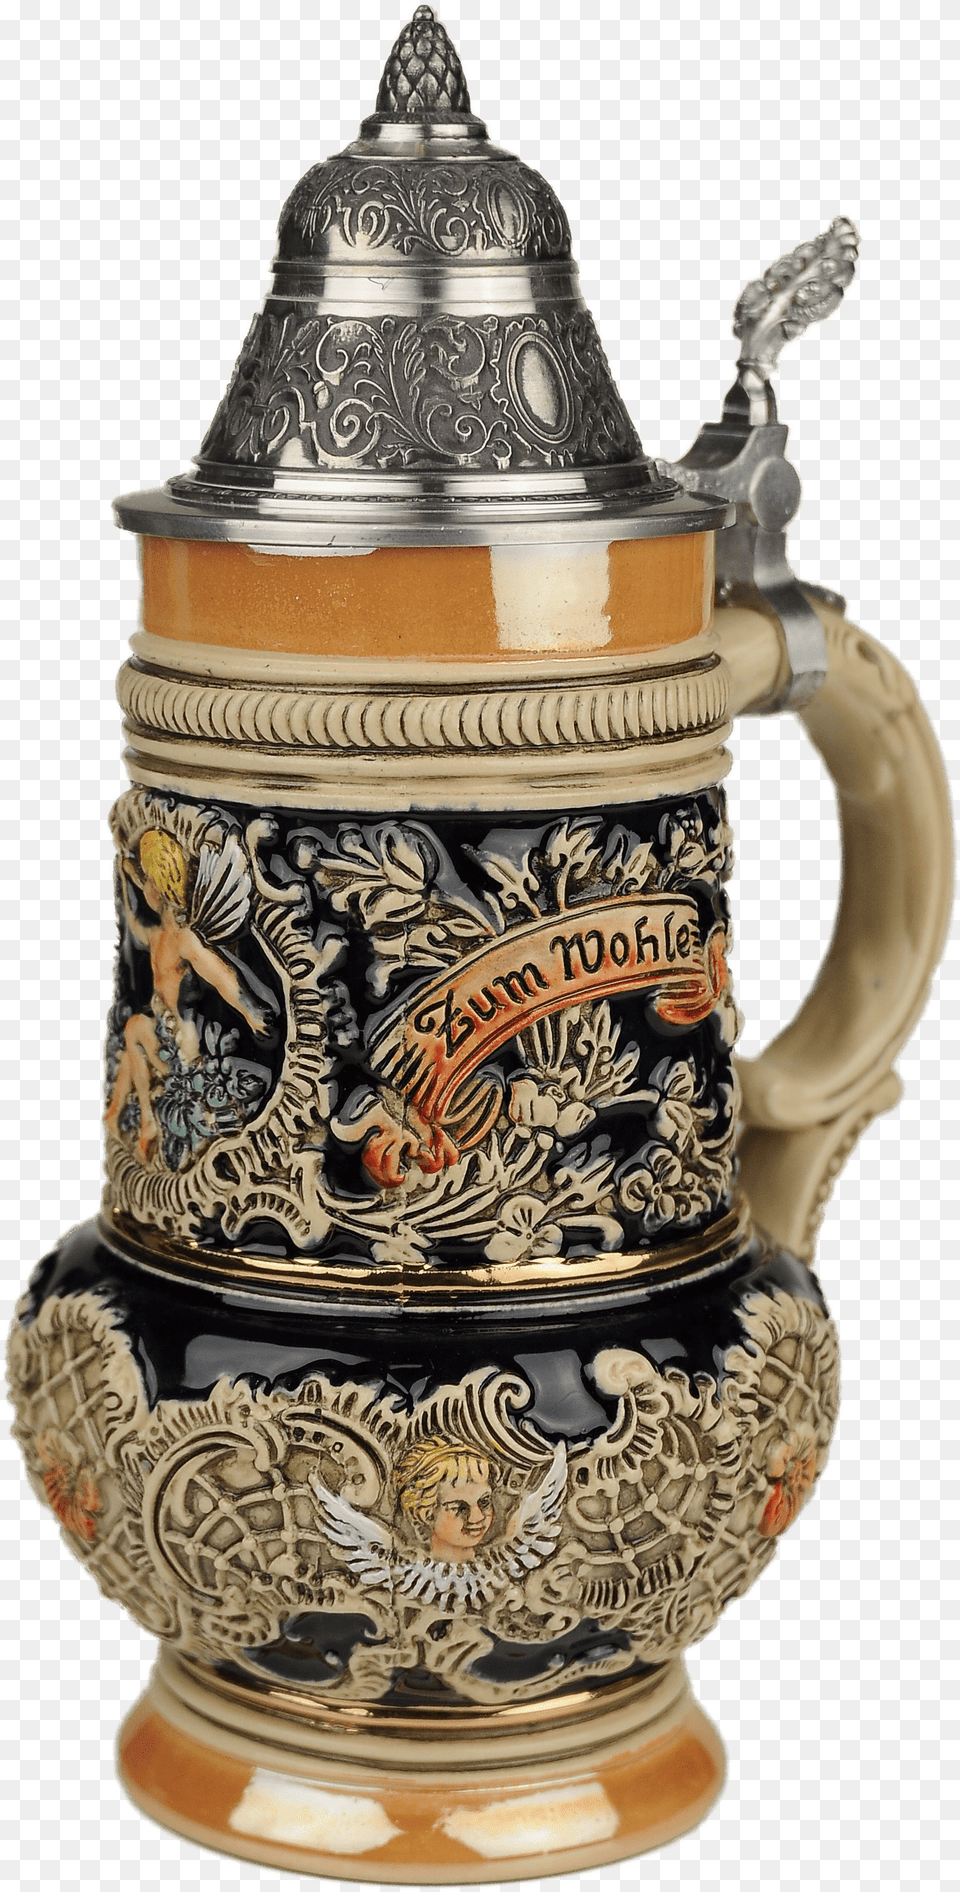 Traditional German Beer Mug Beer Stein By King Thewalt 1894 Rokoko Angel Relief, Cup, Bottle, Pottery, Shaker Png Image